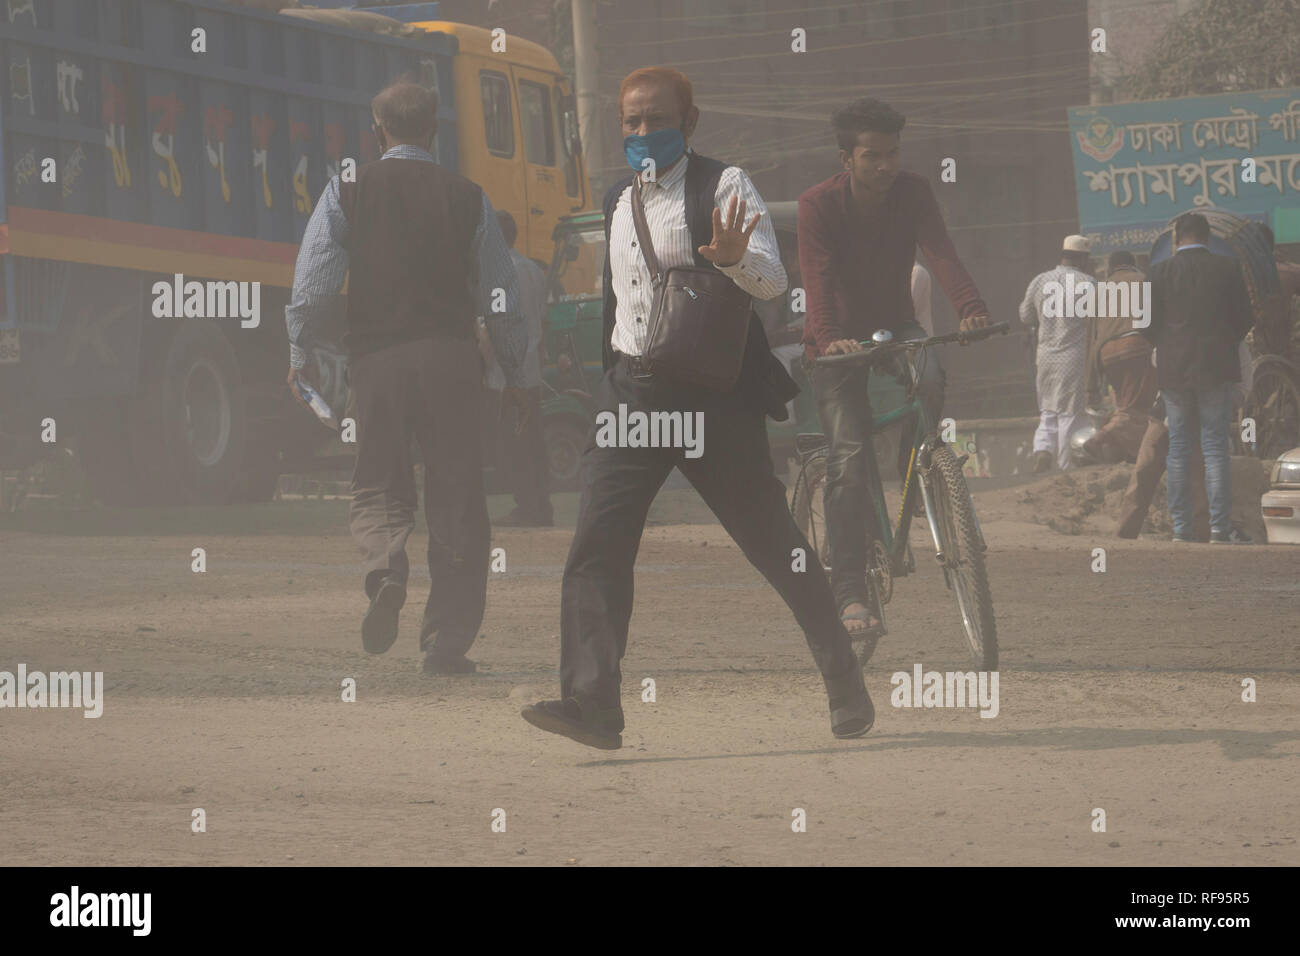 DHAKA, BANGLADESCH - Januar 23: Verschmutzung Staub erreicht eine alarmierende Stufe in Dhaka und viele Todesfälle sowie mehrere Millionen Fälle von Krankheit Auftreten jedes Jahr aufgrund der schlechten Luftqualität in Dhaka, Bangladesch am 23. Januar 2019. Staub getreten, die von Fahrzeugen auf der Straße kann bis zu 33% der Luftverschmutzung. Straße Staub besteht aus Ablagerungen der Auspuffgase und industriellen Auspuffe, Partikel aus Reifen- und Bremsabrieb, Staub von asphaltierten Straßen oder Schlaglöcher, und Staub von Baustellen. Straße Staub ist eine bedeutende Quelle für die Erzeugung und Freisetzung von Partikeln einen Beitrag in die Stockfoto